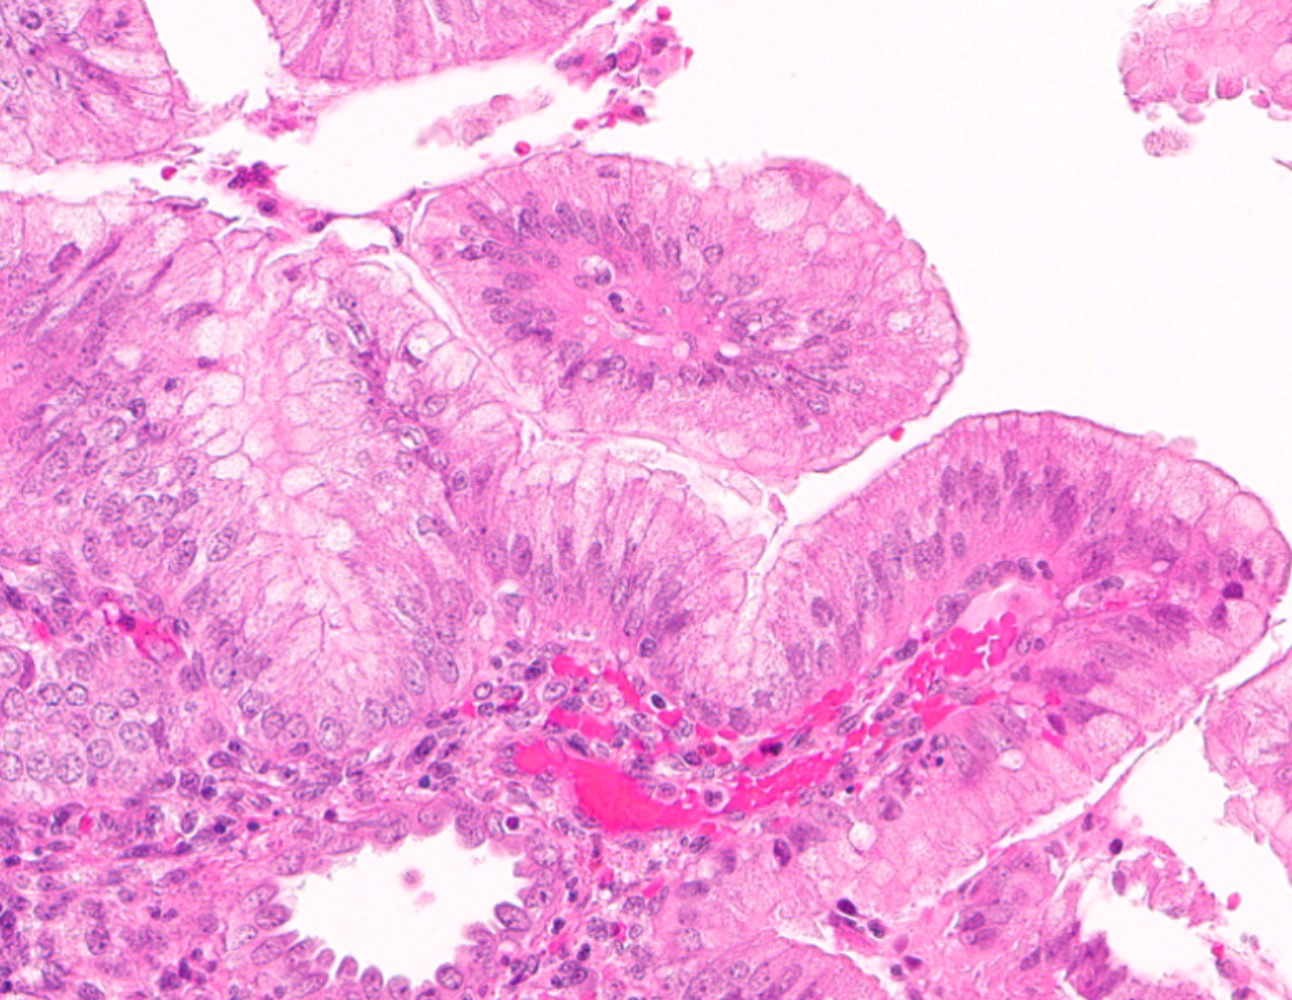 Endometrioid adenocarcinoma with mucinous differentiation